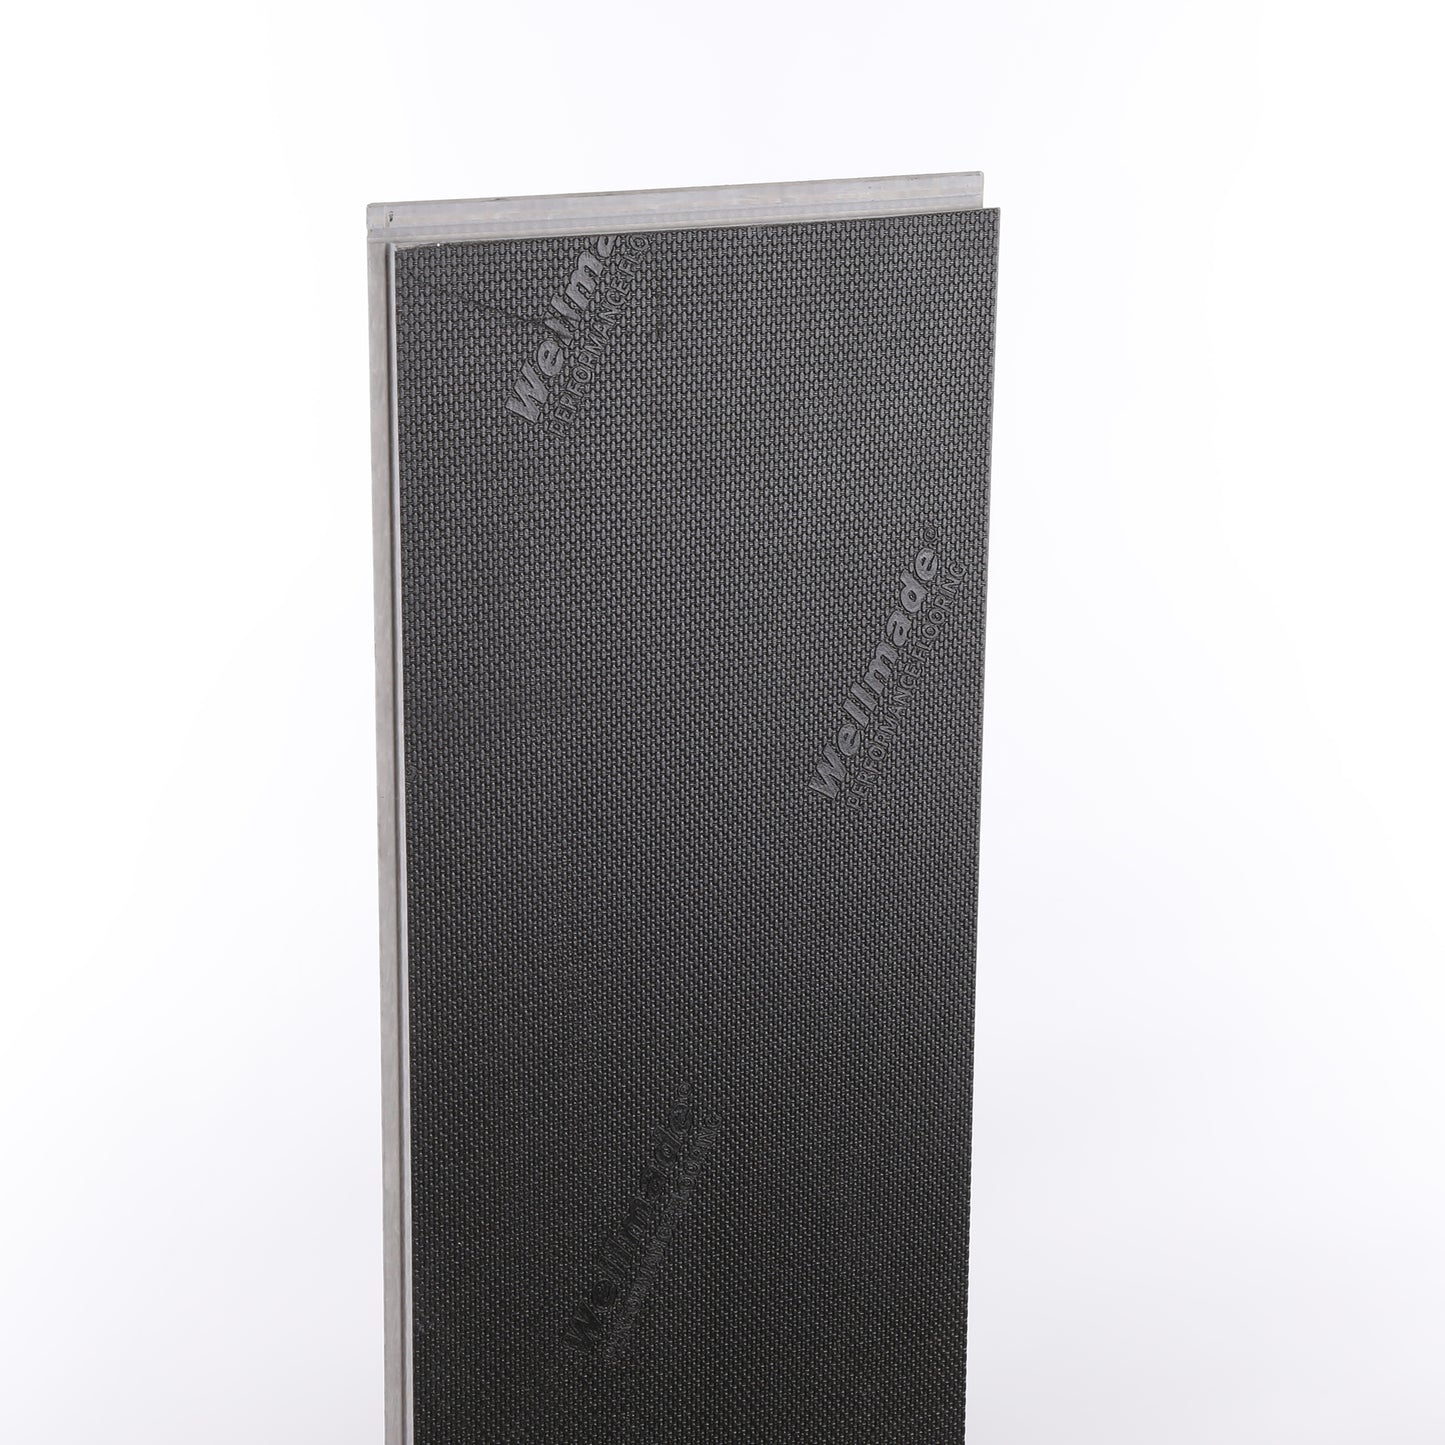 8mm Stormy Gray Waterproof Engineered Hardwood Flooring 7.48 in. Wide x Varying Length Long